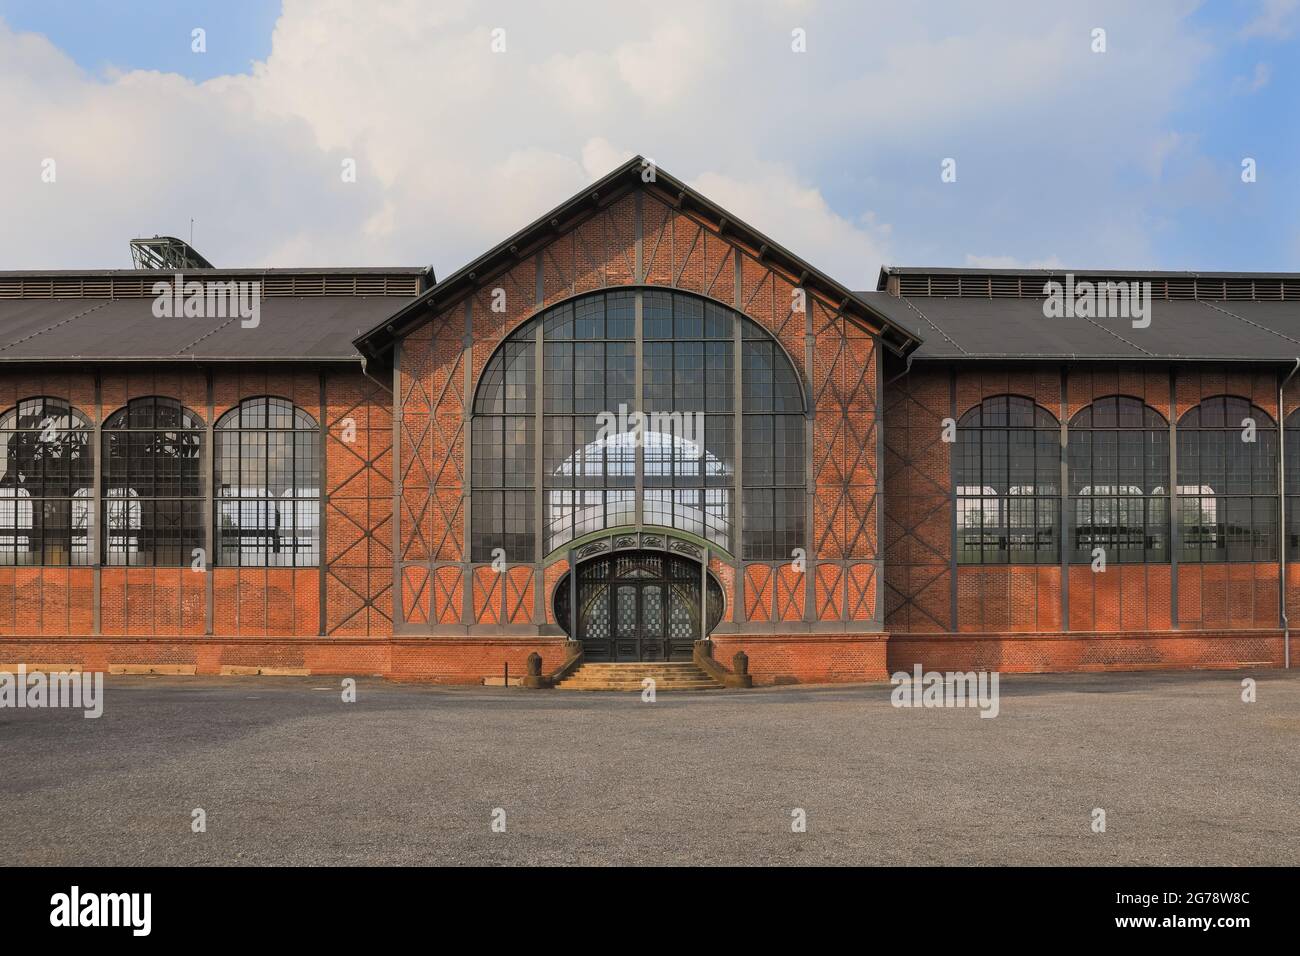 L'entrée du portail Art Nouveau à l'extérieur de la salle des machines du site du patrimoine industriel de la collierie Zeche Zollern, Dortmund, Allemagne Banque D'Images